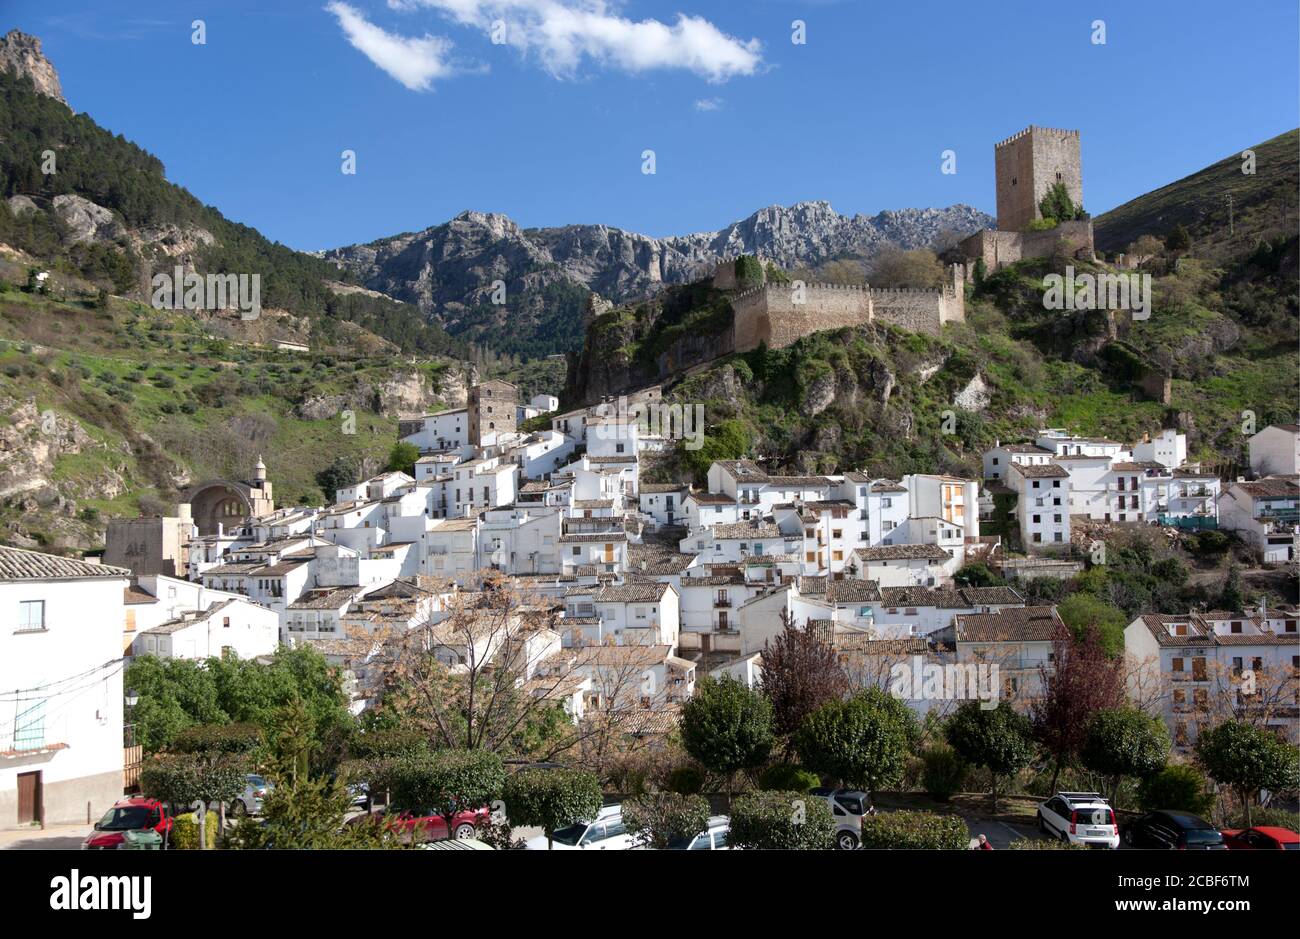 La città spagnola di Cazorla con il suo Castillo de la Yedra, case bianche e sfondo montuoso. Foto Stock